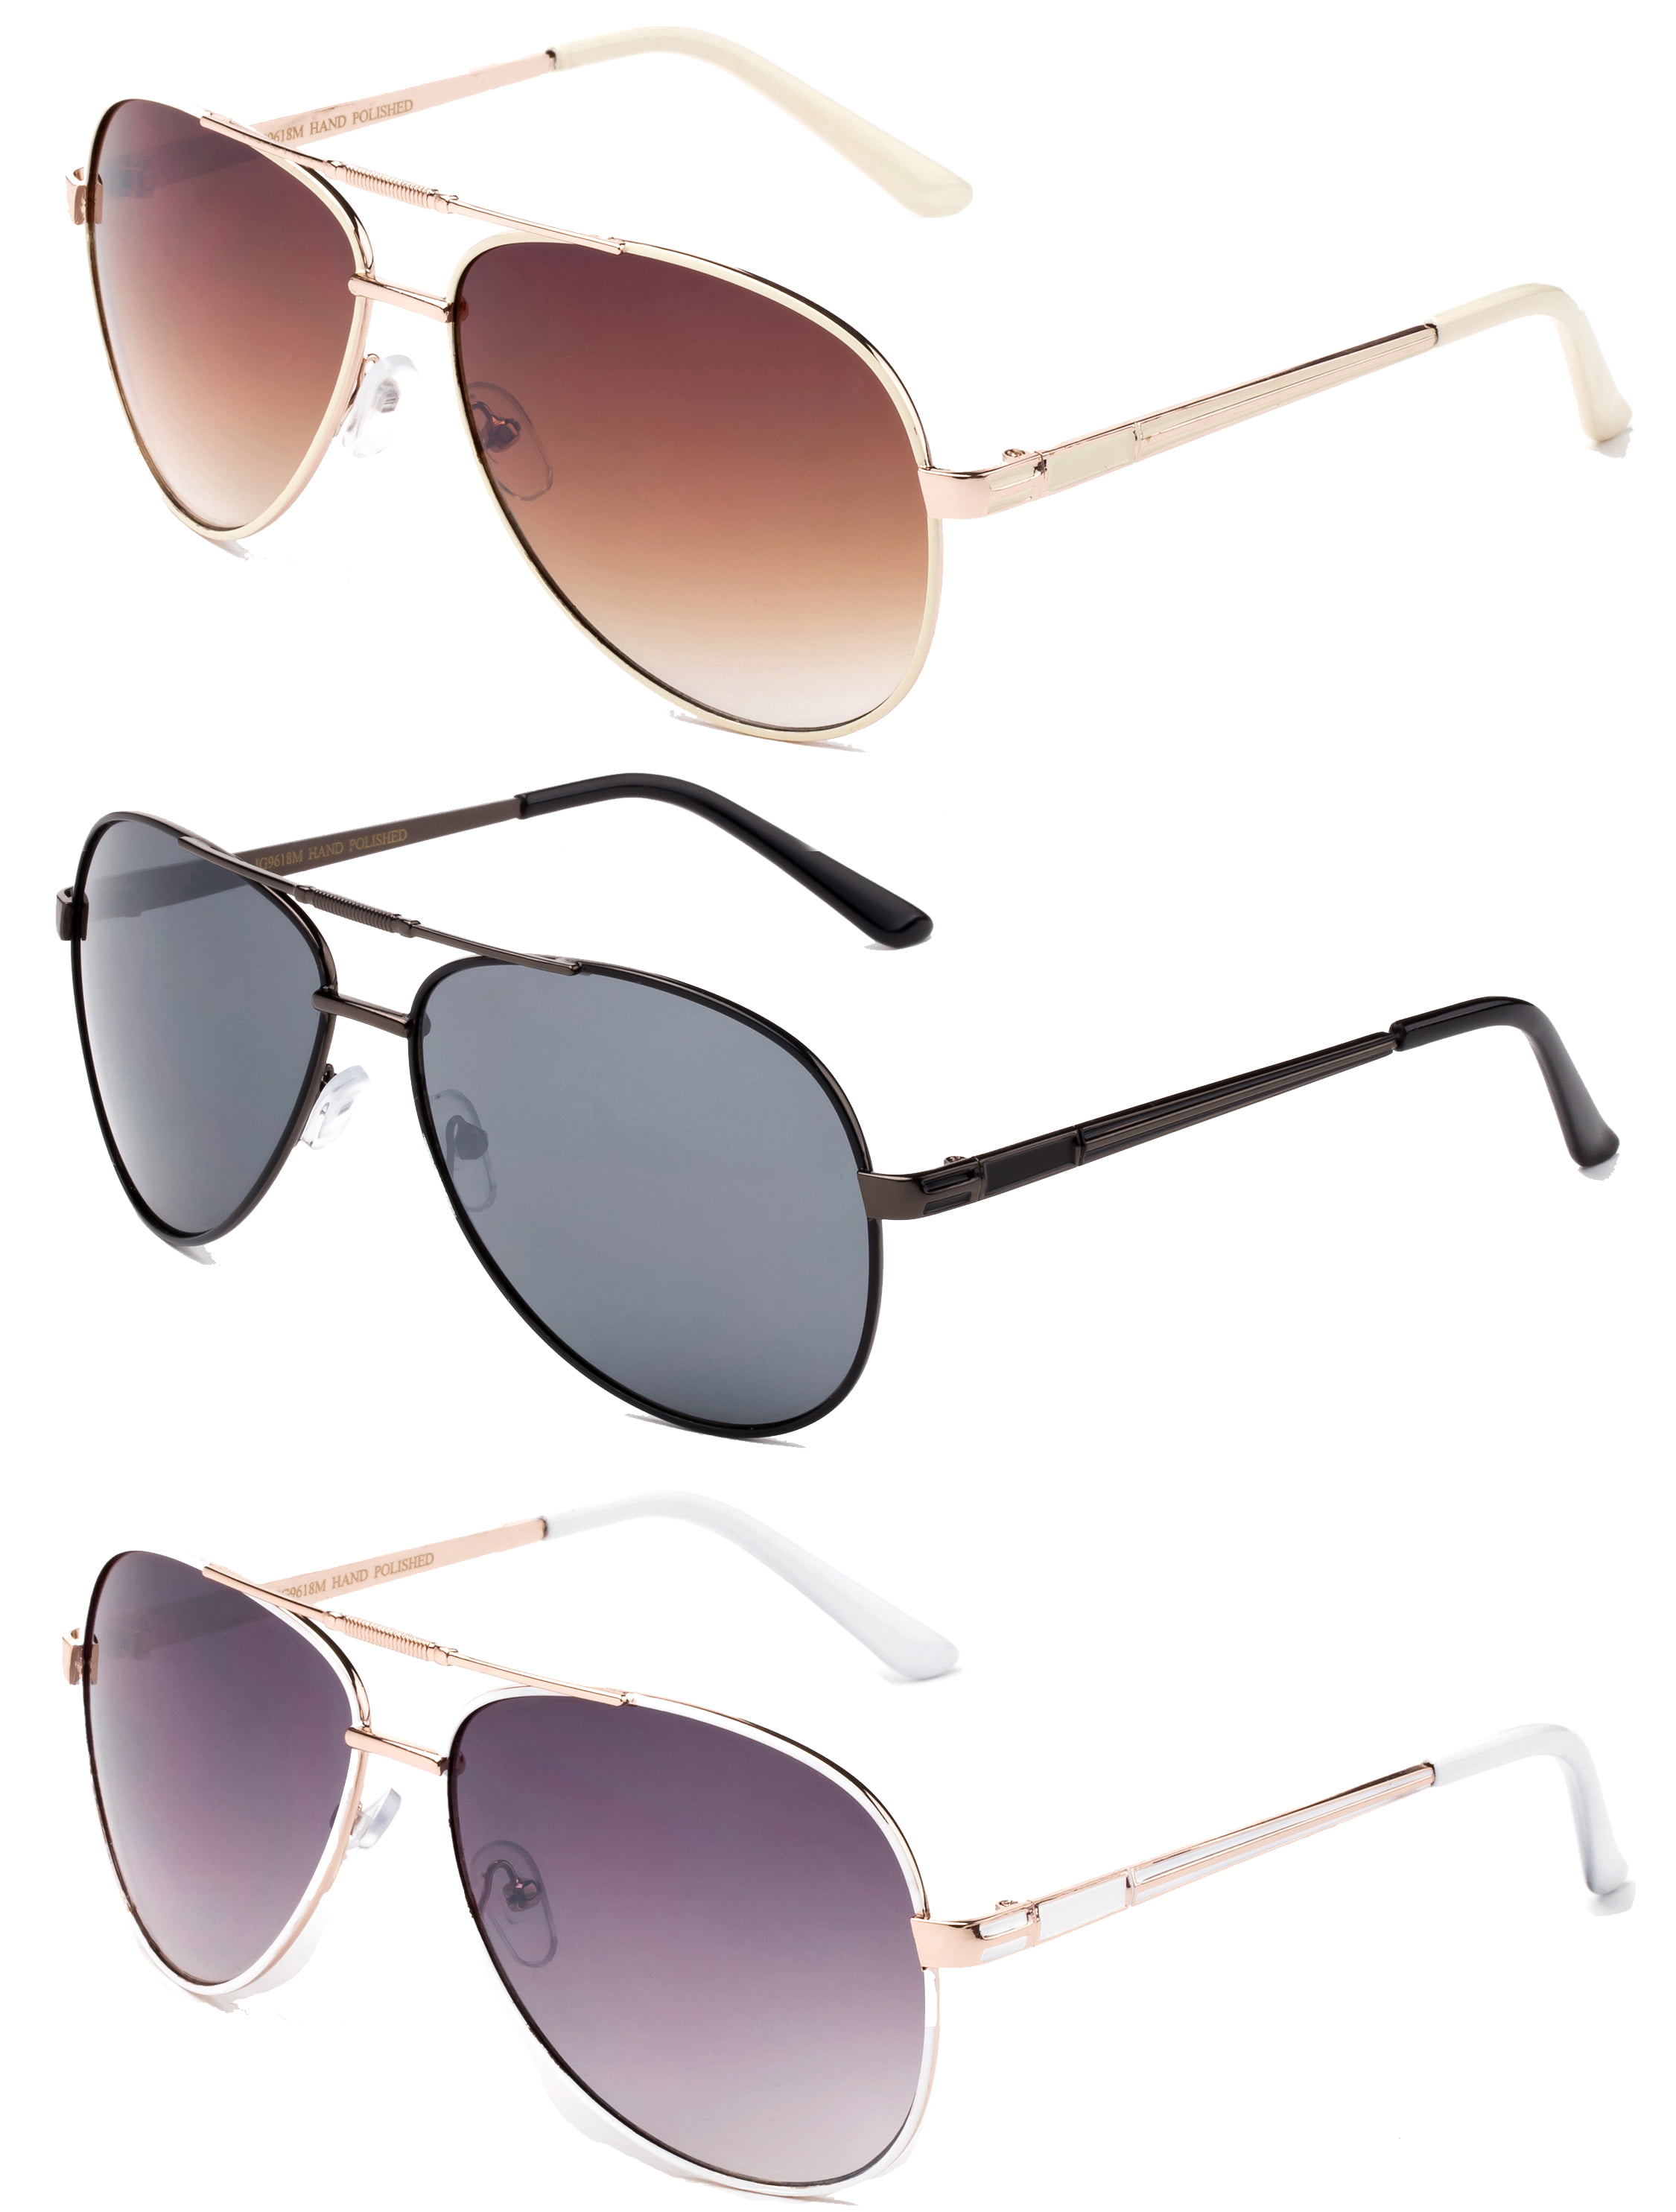 Buy Sunglasses Online for Men and Women